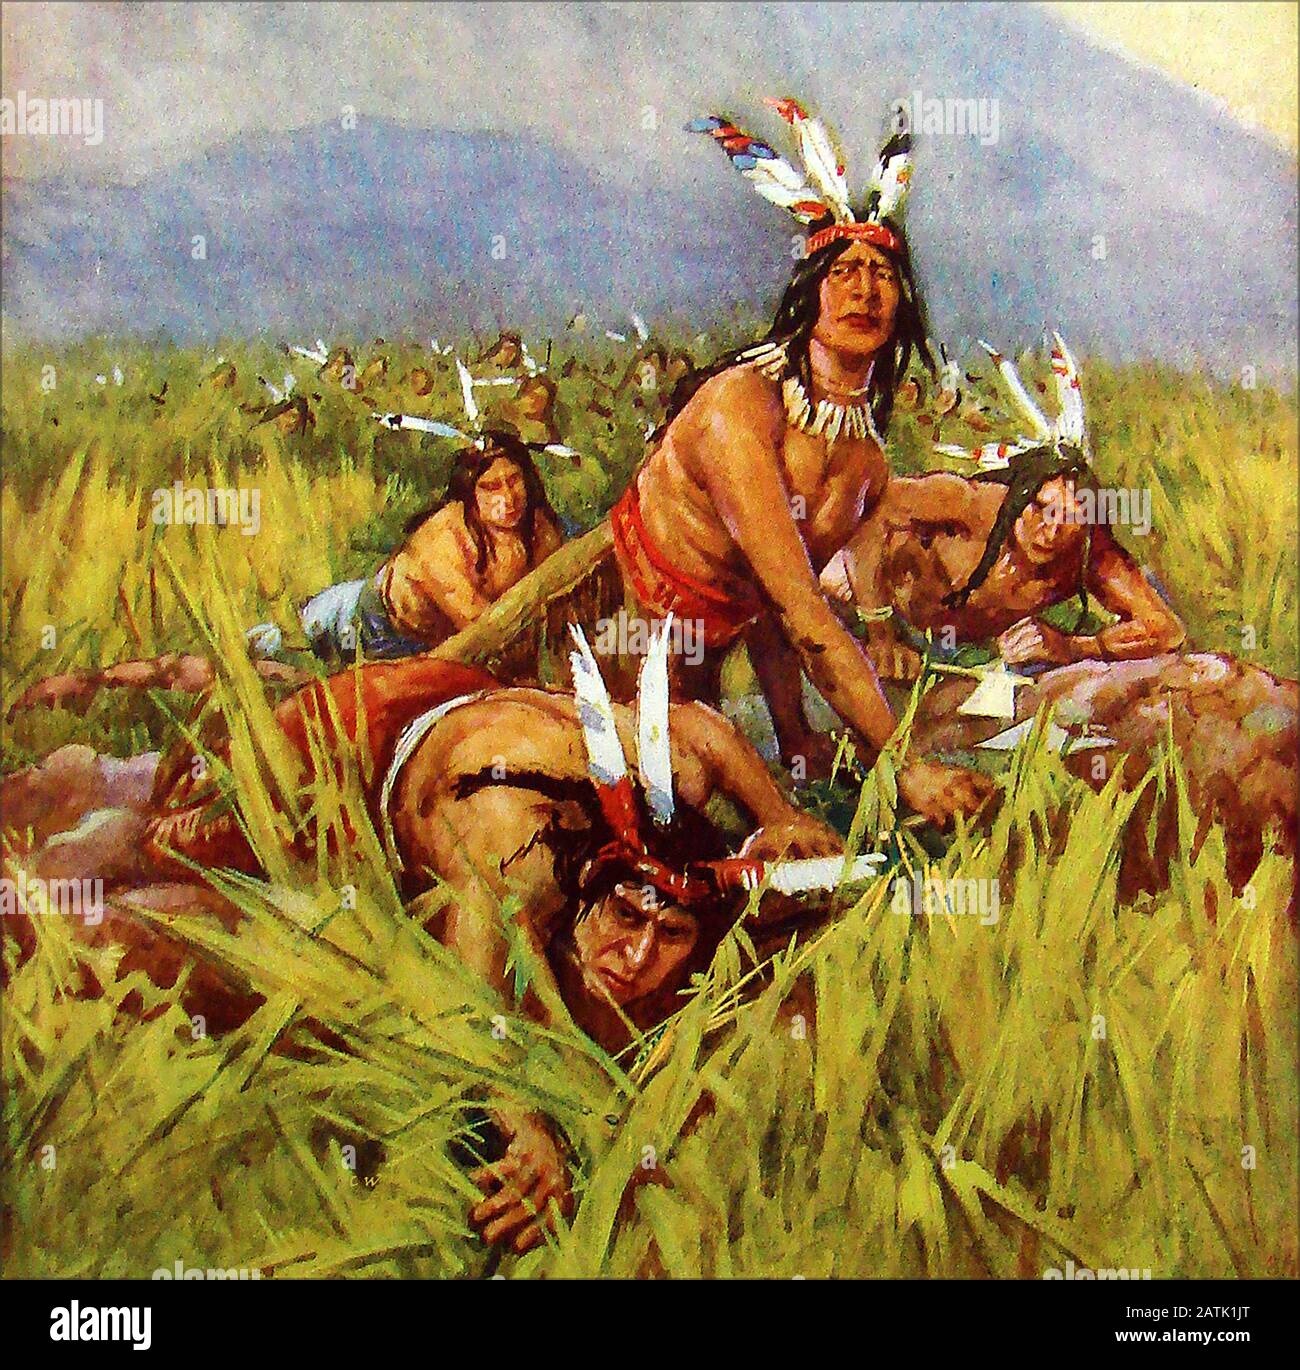 Ein Vintage-Farbdruck, der einheimische amerikanische "Red indians" vor den europäischen Siedlern zeigt. Eine vorausschauende kleine Gruppe bewegt sich vorwärts, während sich die übrigen Krieger dahinter verstecken Stockfoto